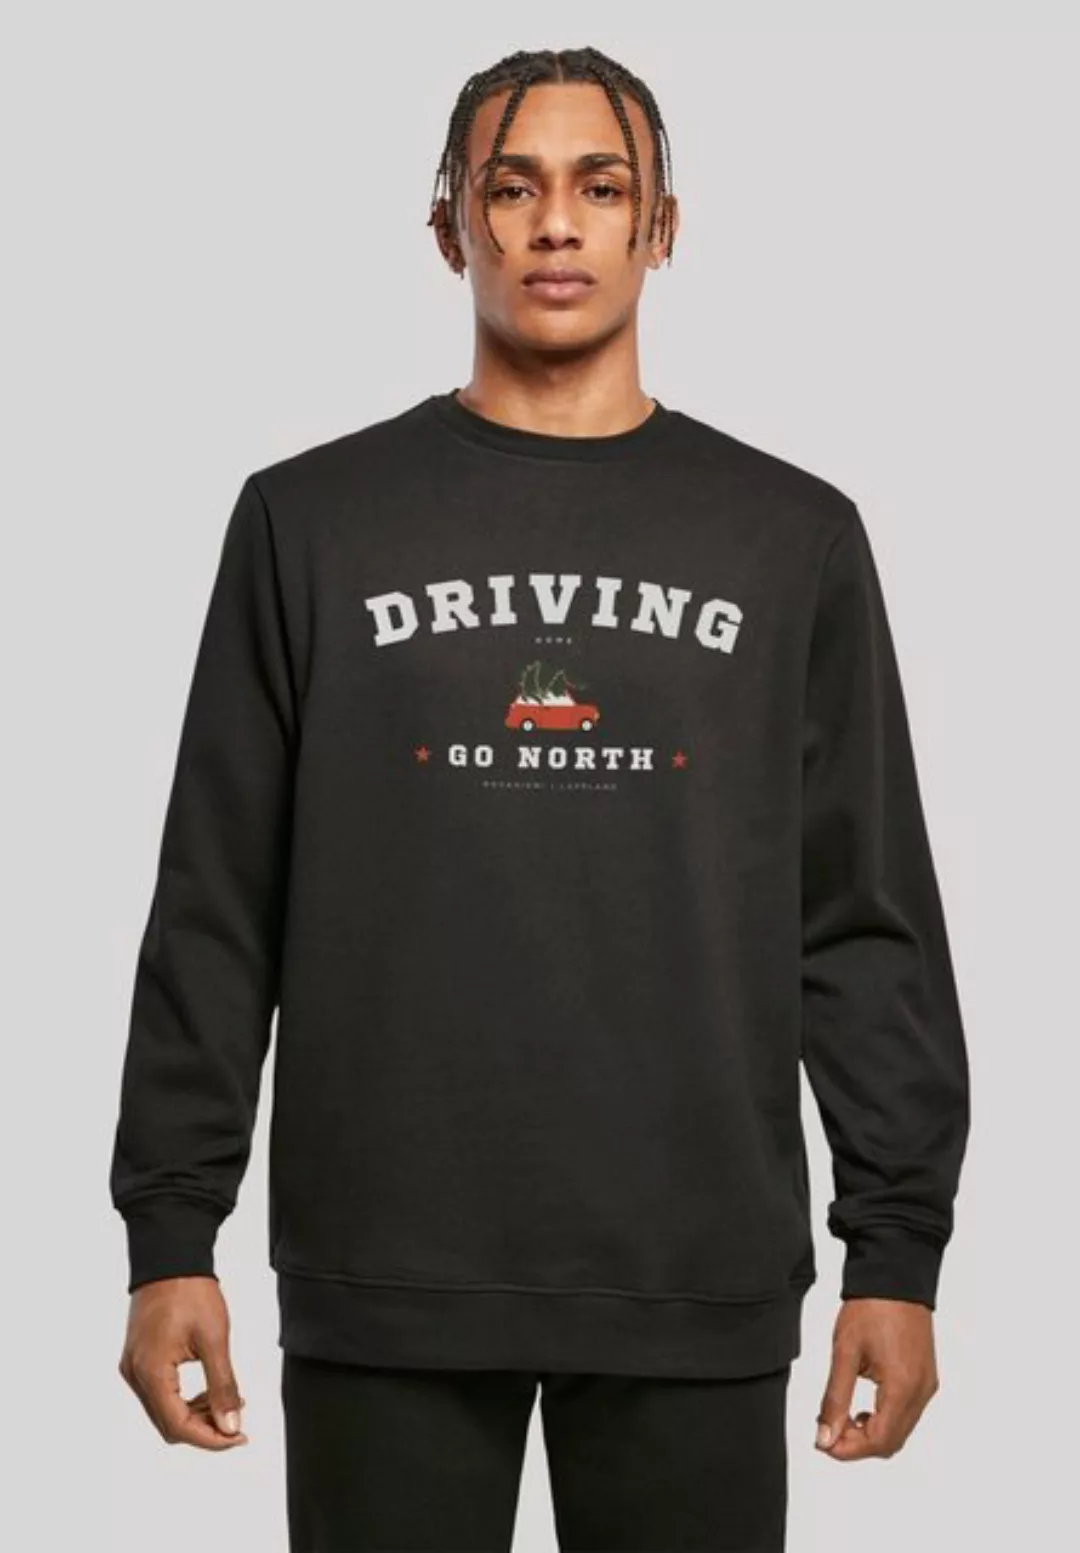 F4NT4STIC Sweatshirt "Driving Home Weihnachten", Weihnachten, Geschenk, Log günstig online kaufen